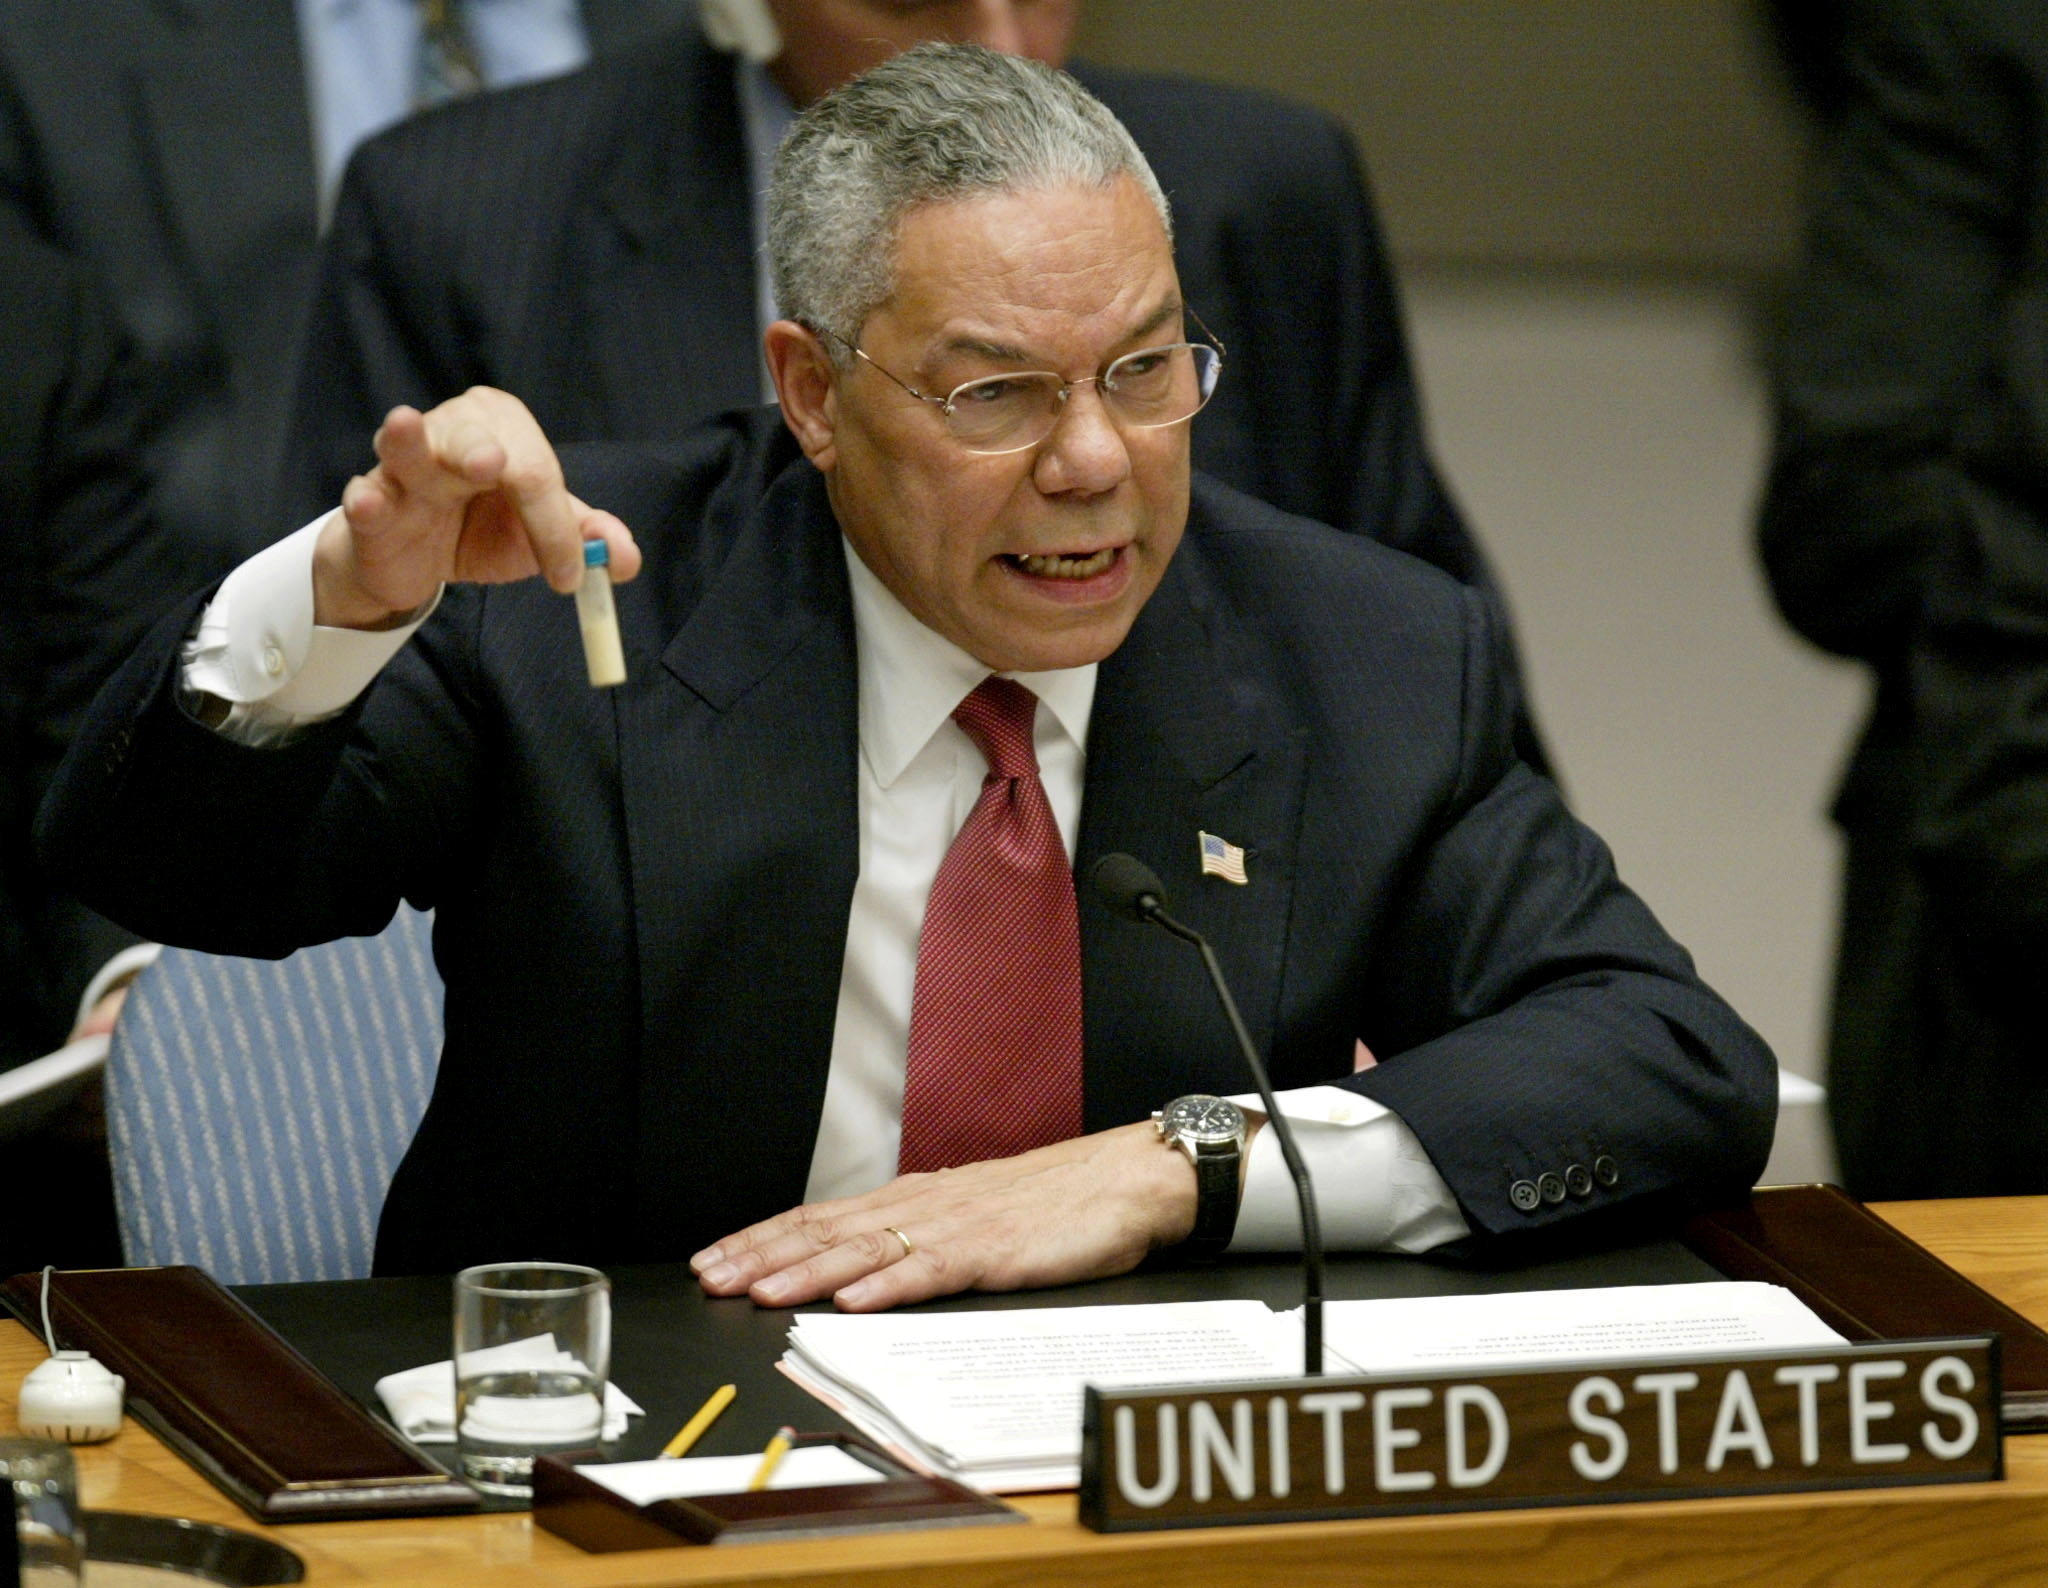 El Secretario de Estado de Estados Unidos, Colin Powell, durante su presentación sobre Irak ante el Consejo de Seguridad de la ONU, en Nueva York el 5 de febrero de 2003, en una foto de archivo. El ex general norteamericano murió este lunes 18 de octubre como consecuencia de complicaciones por coronavirus (Reuters)